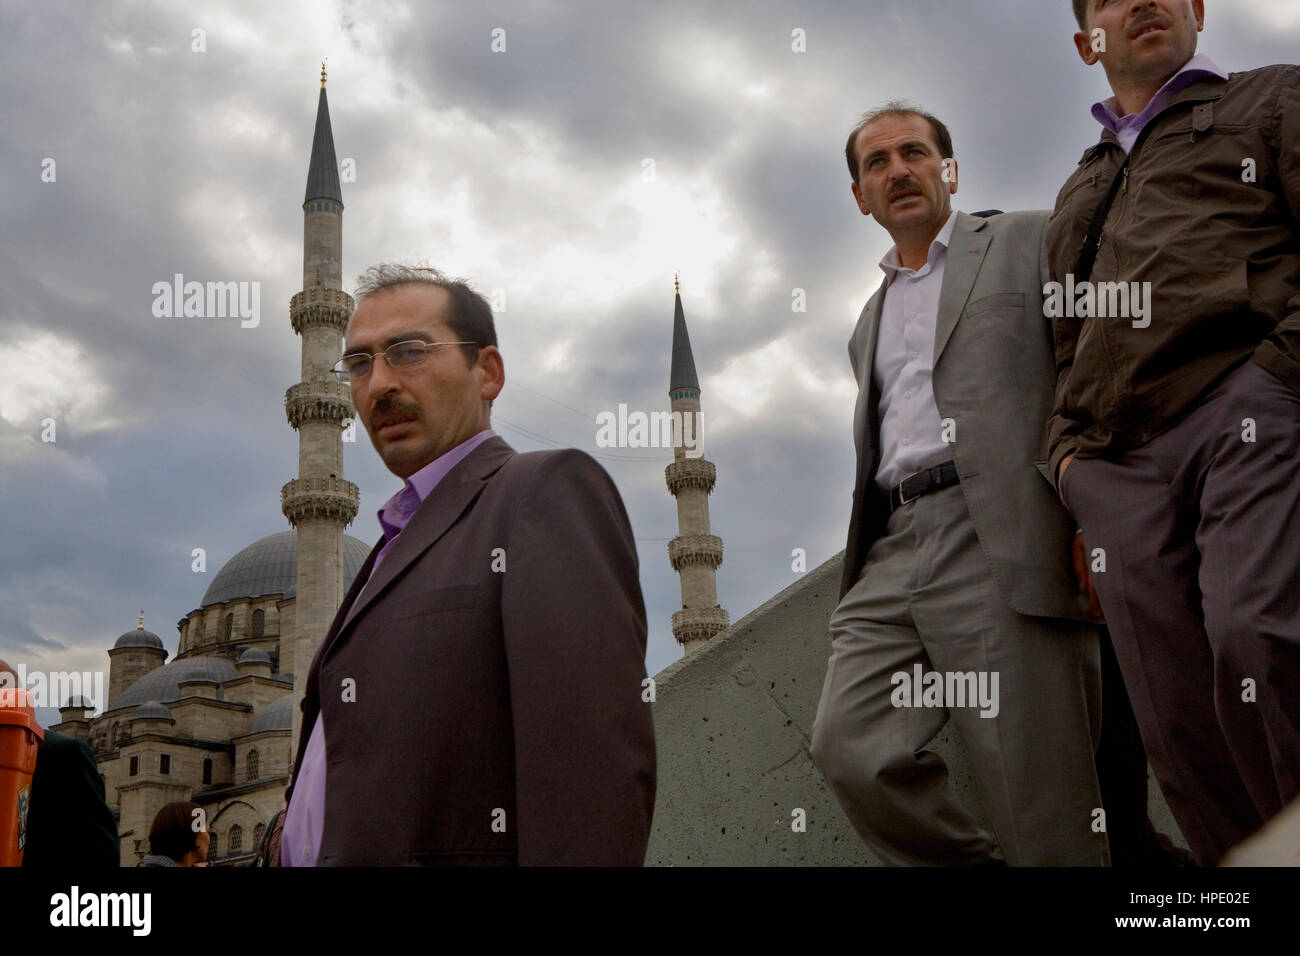 Yeni Cami mezquita y personas, Eminonu trimestre. Estambul. Turquía Foto de stock